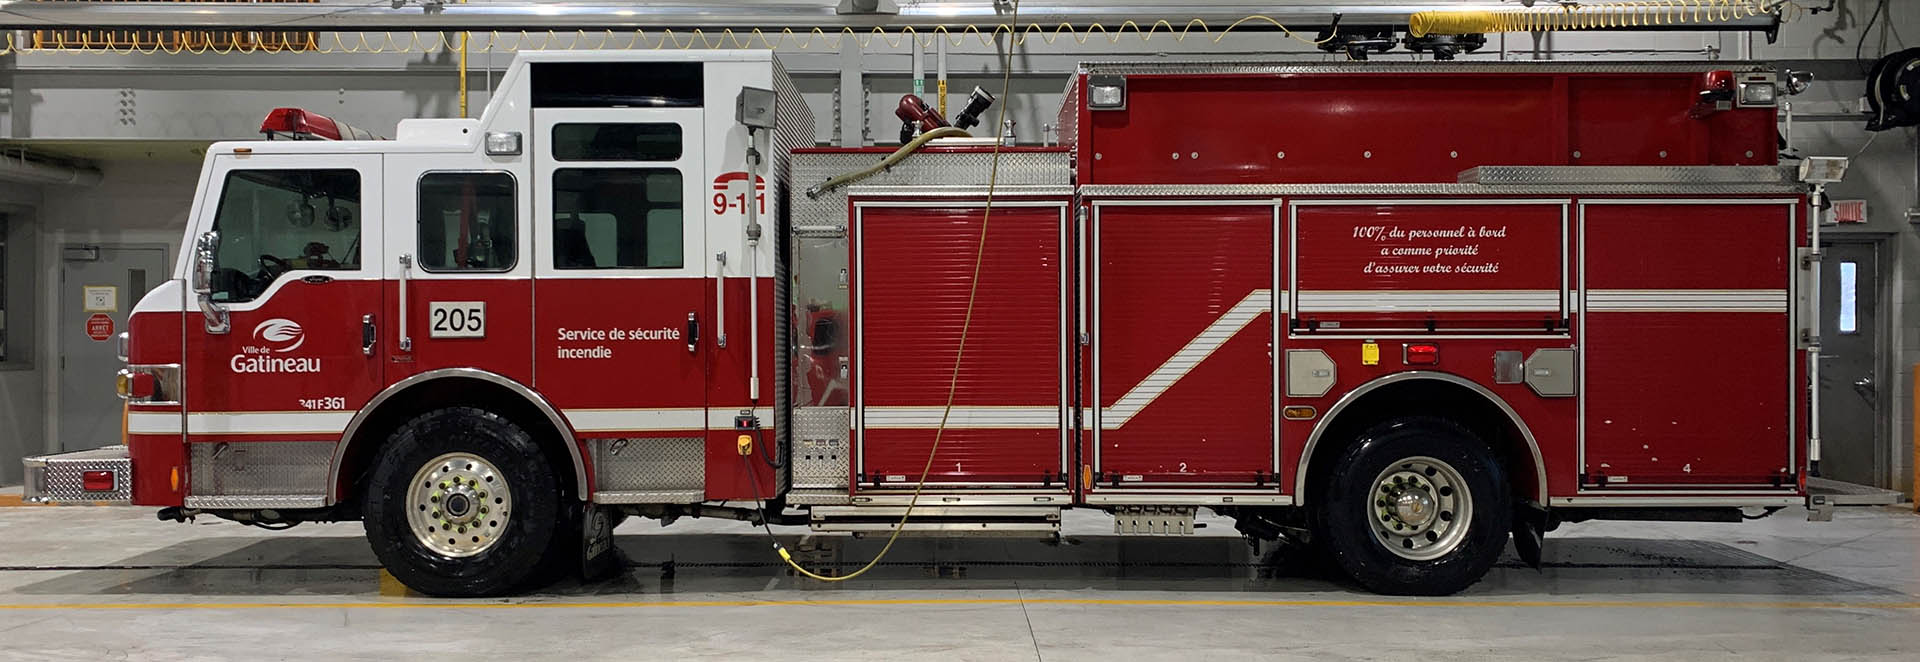 https://www.gatineau.ca/docs/guichet_municipal/pompiers/vehicules_securite_incendie/unite_200.jpg